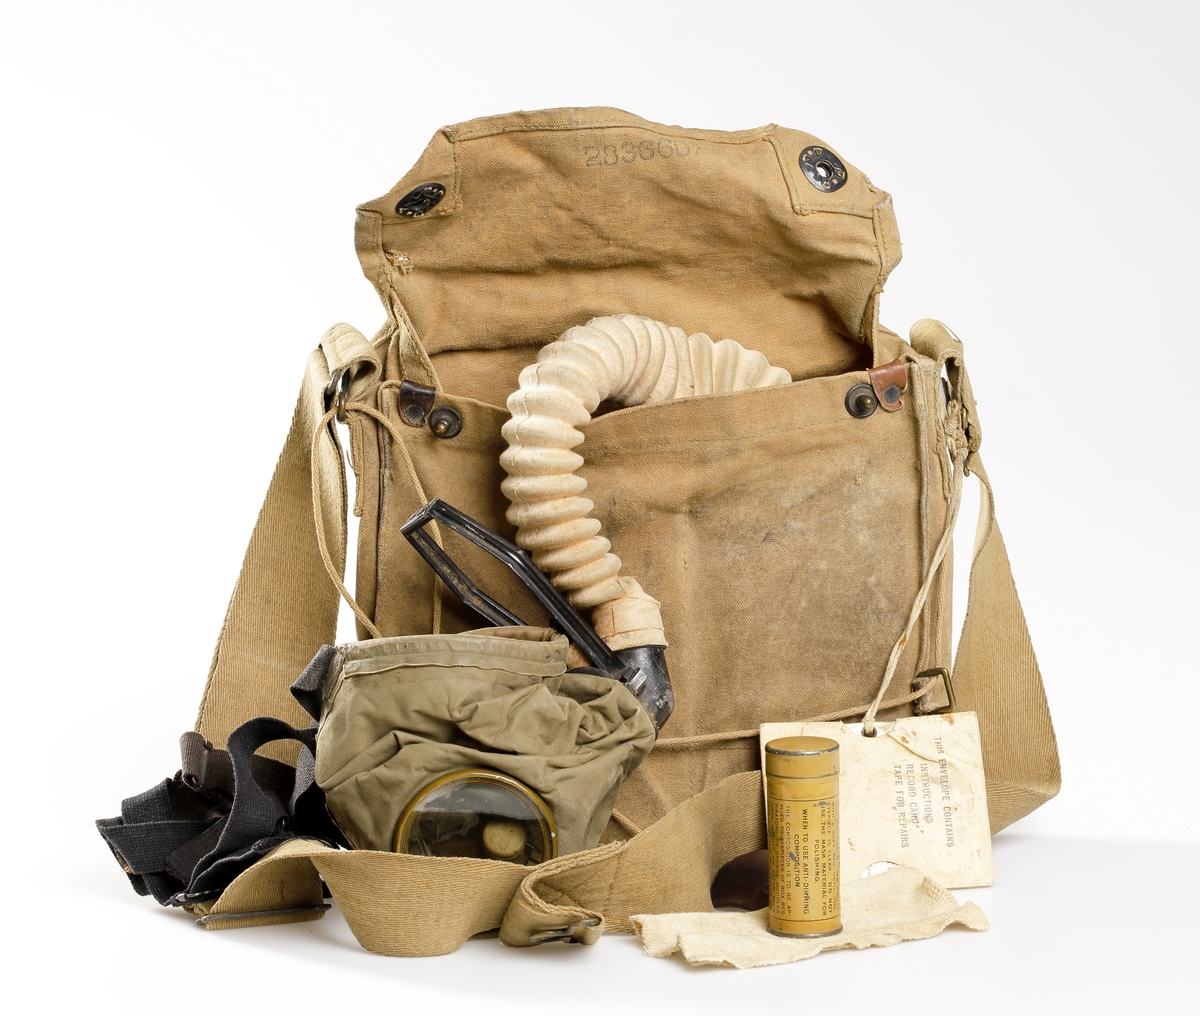 Gasmask bestående av väska, gasmask med slang och filter, samt behållare med imskyddsmedel med tillhörande putsduk. Väskan, att förvara och bära masken i, är i rektangulär form och tillverkad av kanvas, samt försedd med en bärrem i sadelgjord. I övre delen av väskan sitter ett lock som kan stängas med hjälp av tryckknappar. Lockets insida är stämplat med nummer "283660", och väskans utsida med soldatens namn "Carl E. Carlson", samt nummer "2083940" med bläck. På väskan är det även fastknutet med snöre, en instruktionsbok i fodral med texten "THE ENVELOPE CONTAINS INSTRUCTIONS RECORD TAPE FOR REPAIRS". Denna bok talar om hur masken används, samt innehåller också ett reparationskort. 
Gasmasken består av en glasögonförsedd mask som, med hjälp av remmar, krängs över huvudet för att skydda mot stridsgas. Från masken går en slang ner i väskan där en gul filterbehållare i plåt finns, som filtrerar luften innan den inandas. Botten av filtret är försett med ett membran som öppnas och stängs när man andas. Masken är stämplad med siffran "3" som är storleken, och numret "129T  381". Den gula filterbehållaren är märkt "CANCO" inom en oval. Den har även numret "148XH". En lädertunga vid maskens utblås är märkt "4819".
I väskan förvaras även en beige/gul plåtcylinder innehållande imskyddsmedel, samt en putsduk. Detta är till för att putsa gasmaskens glas, och detta görs med putsduken. Denna behållare har texten "THE CAN CONTAINS ANTI-DIMMING COMPOSITION FOR GAS MASKS......".